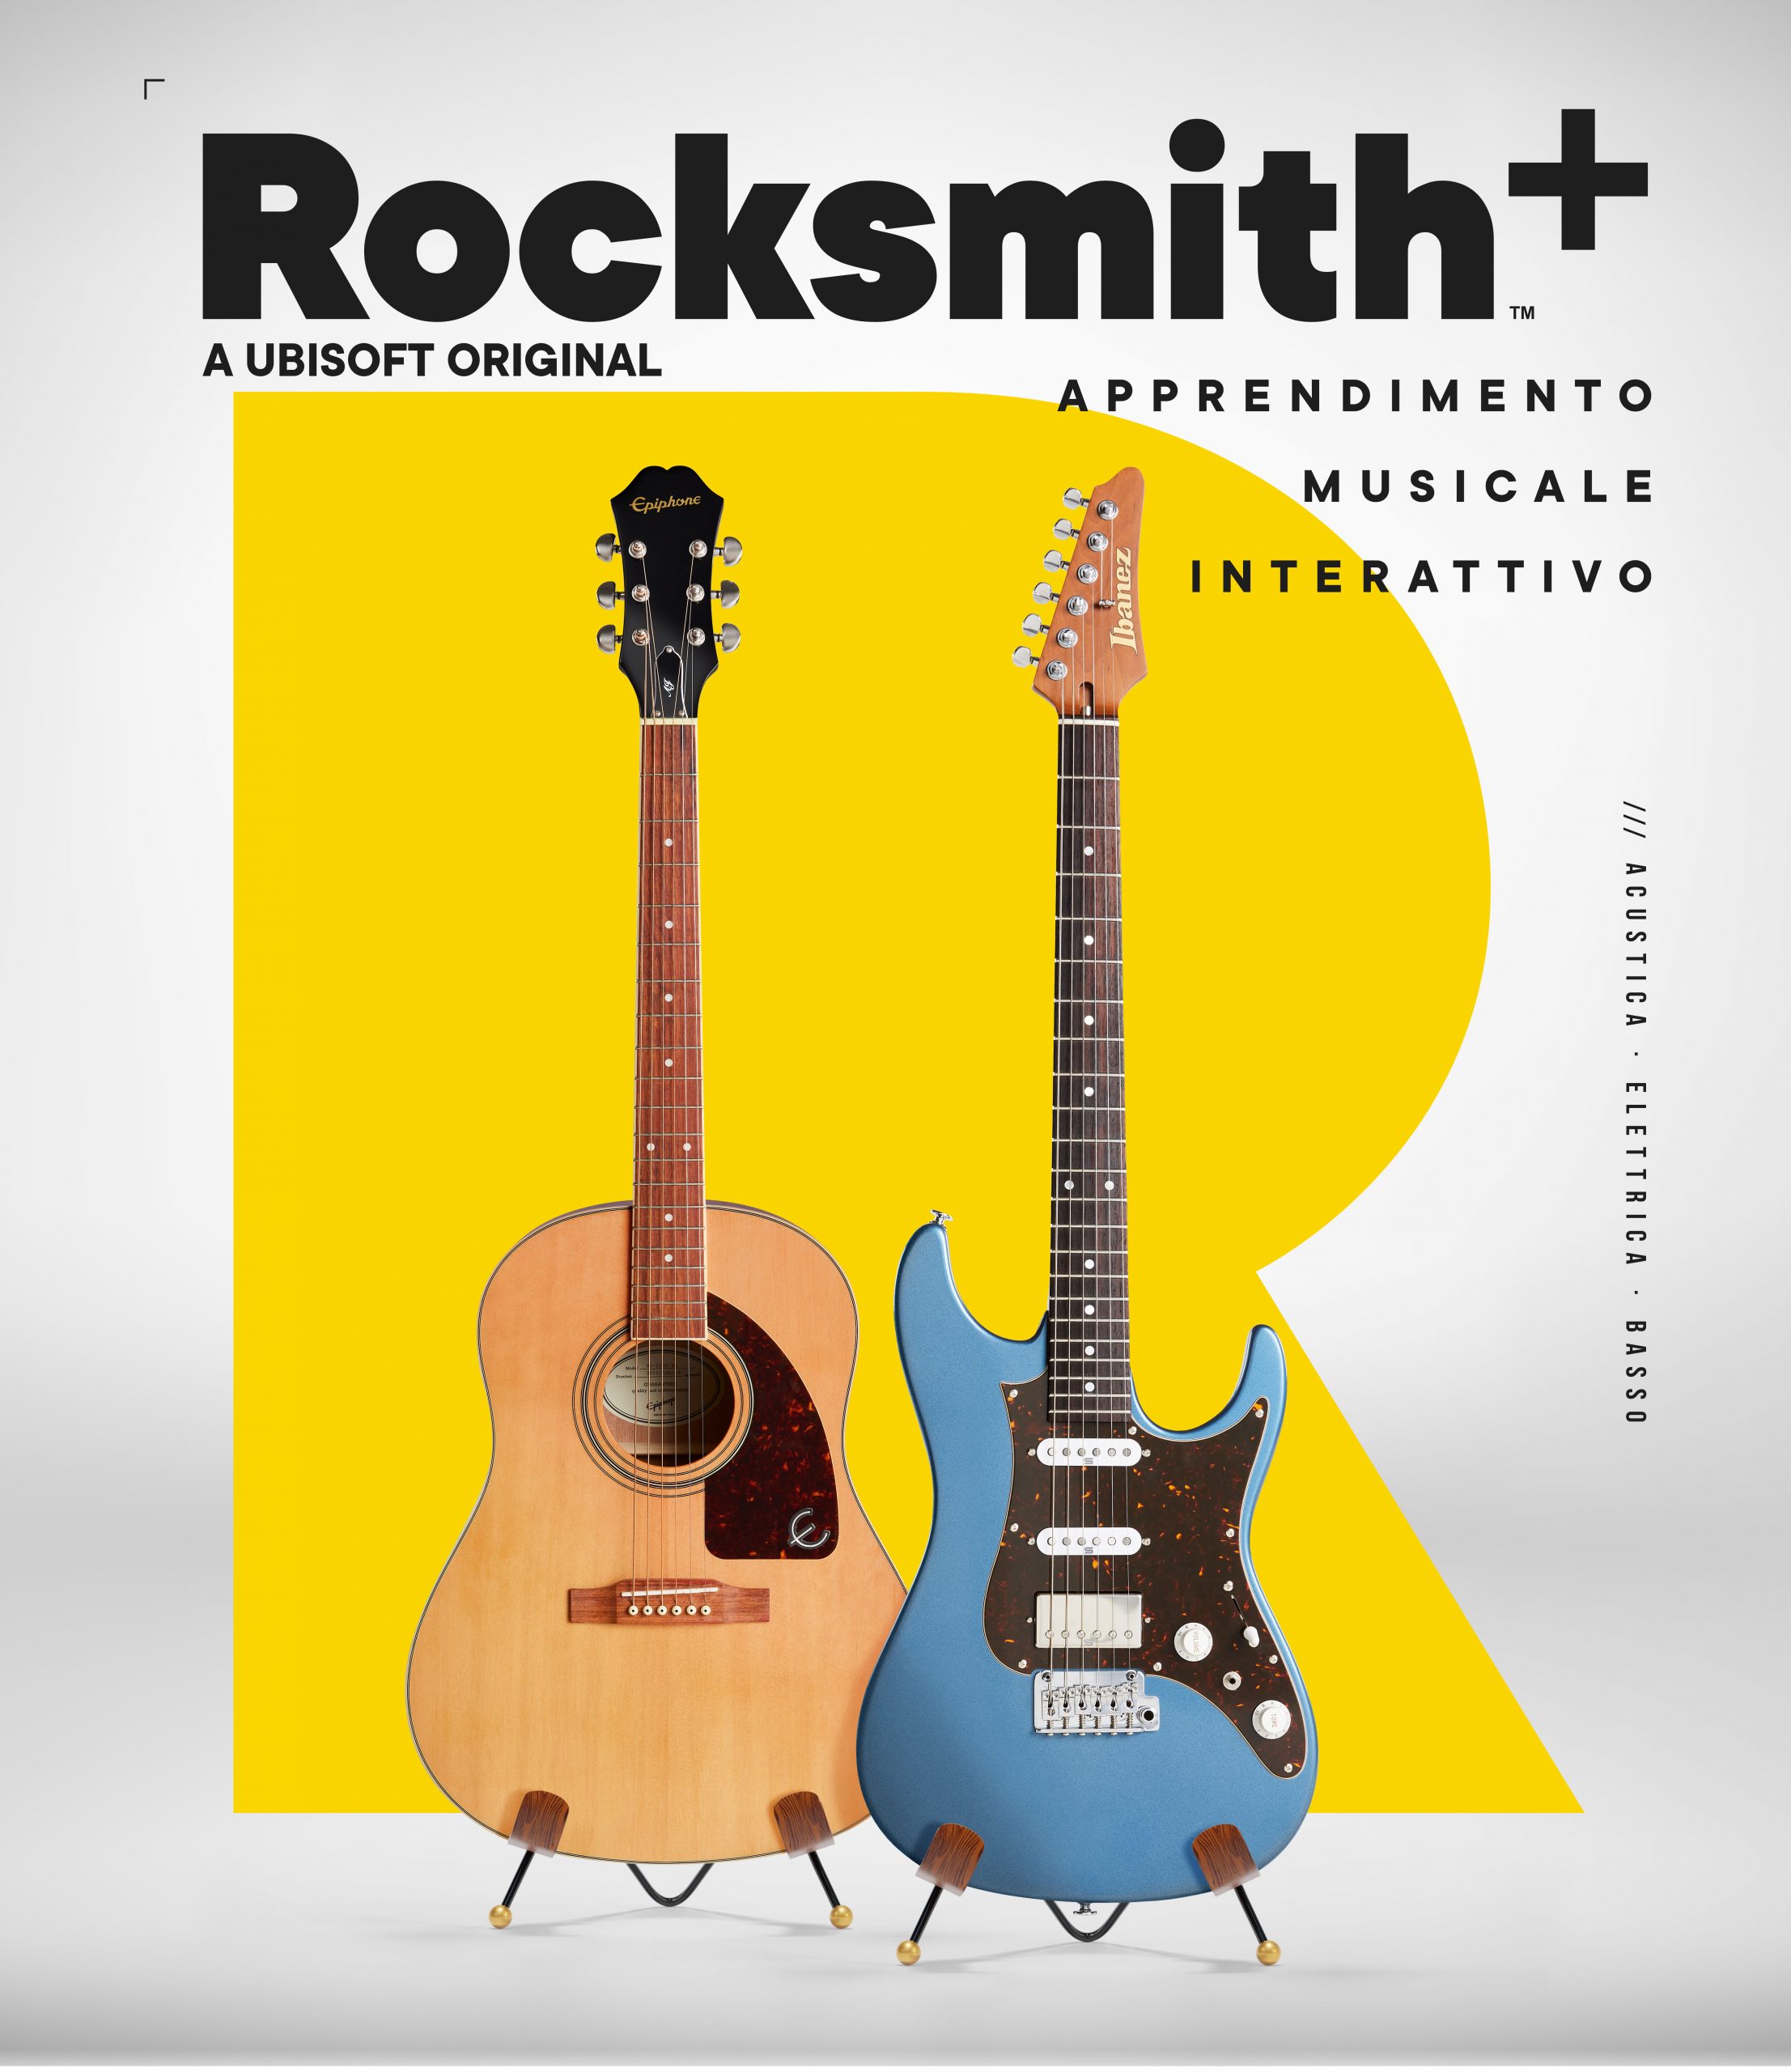 Rocksmith+ apprendimento musicale interattivo